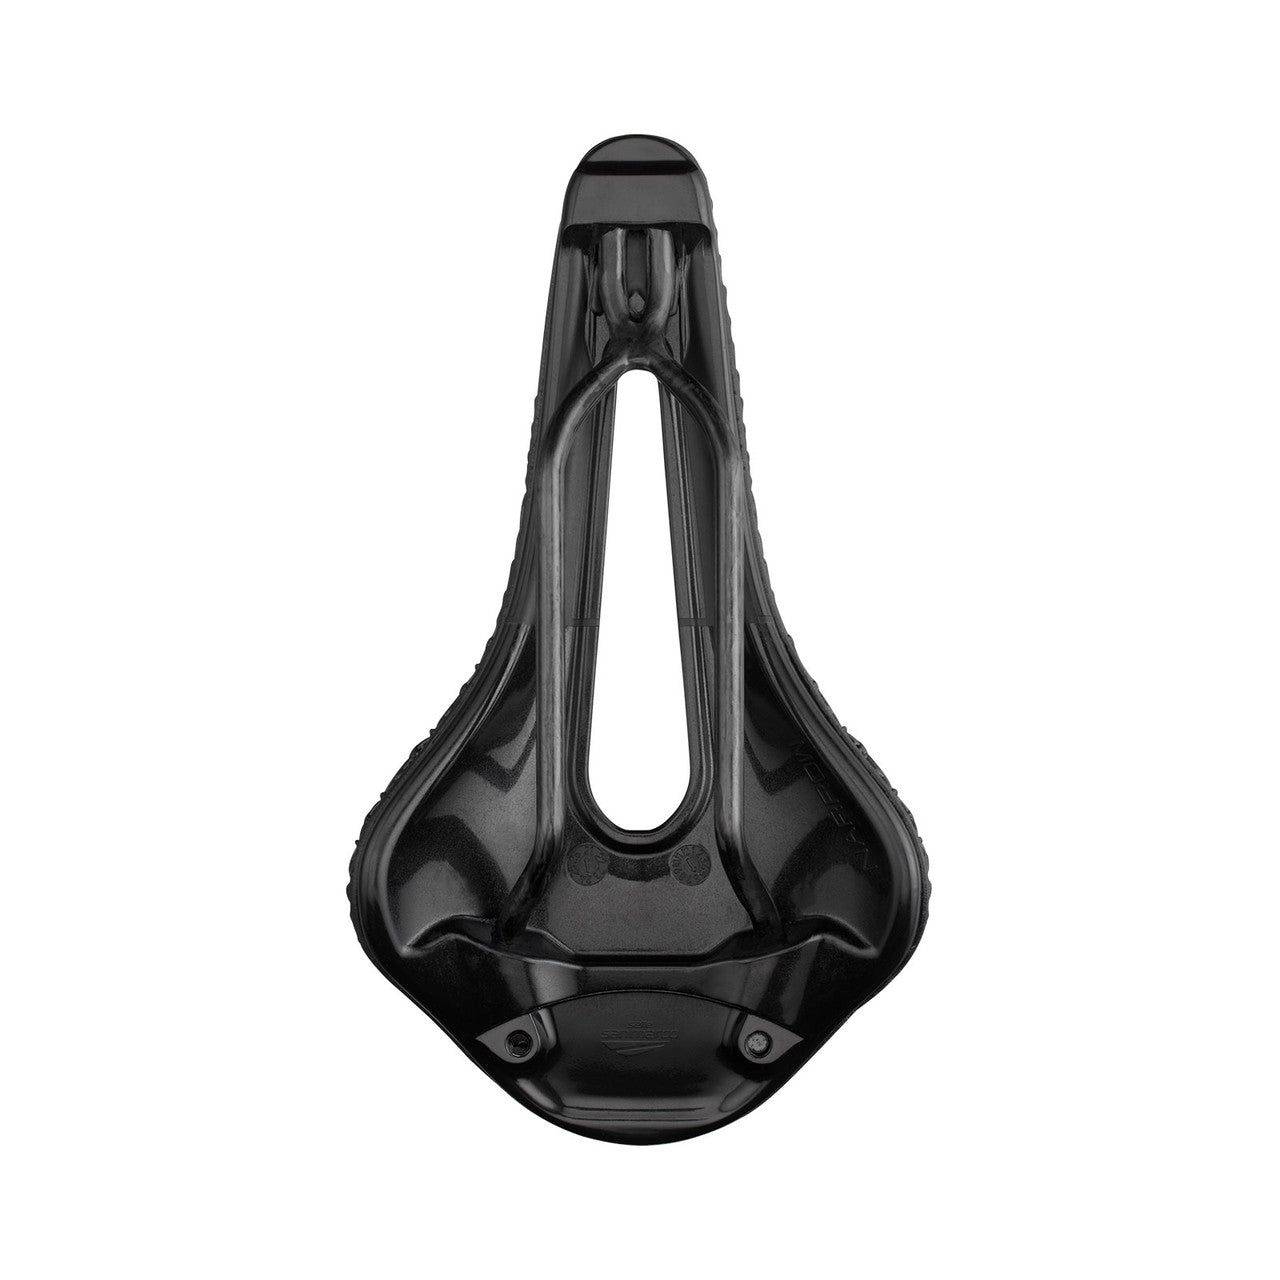 San Marco Shortfit 2.0 3D Carbon FX S3 saddle 